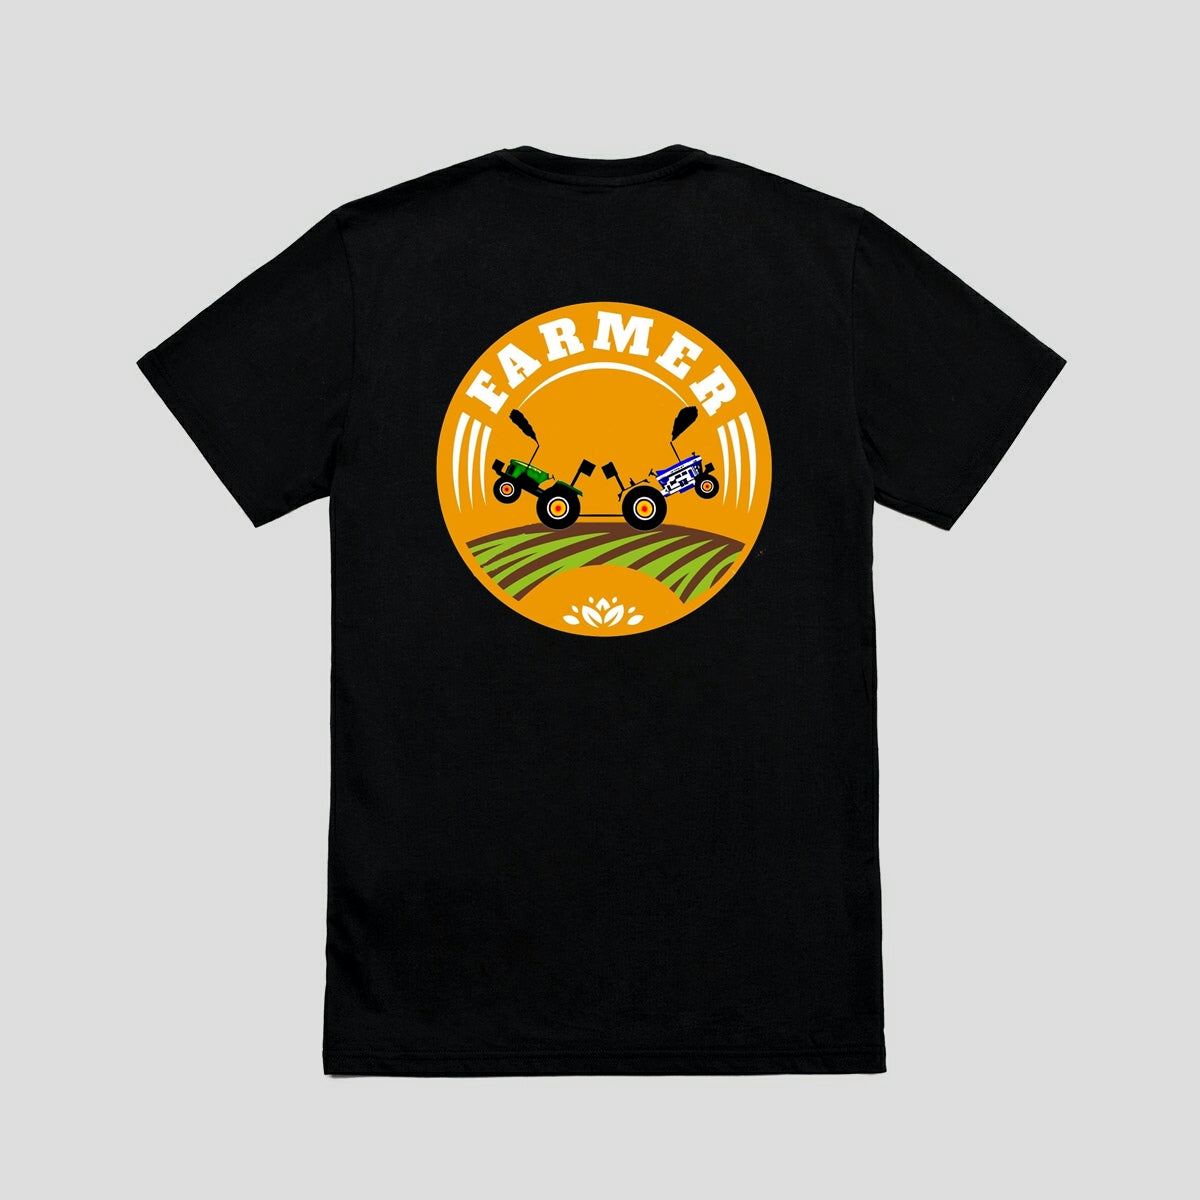 Farmer T-Shirt